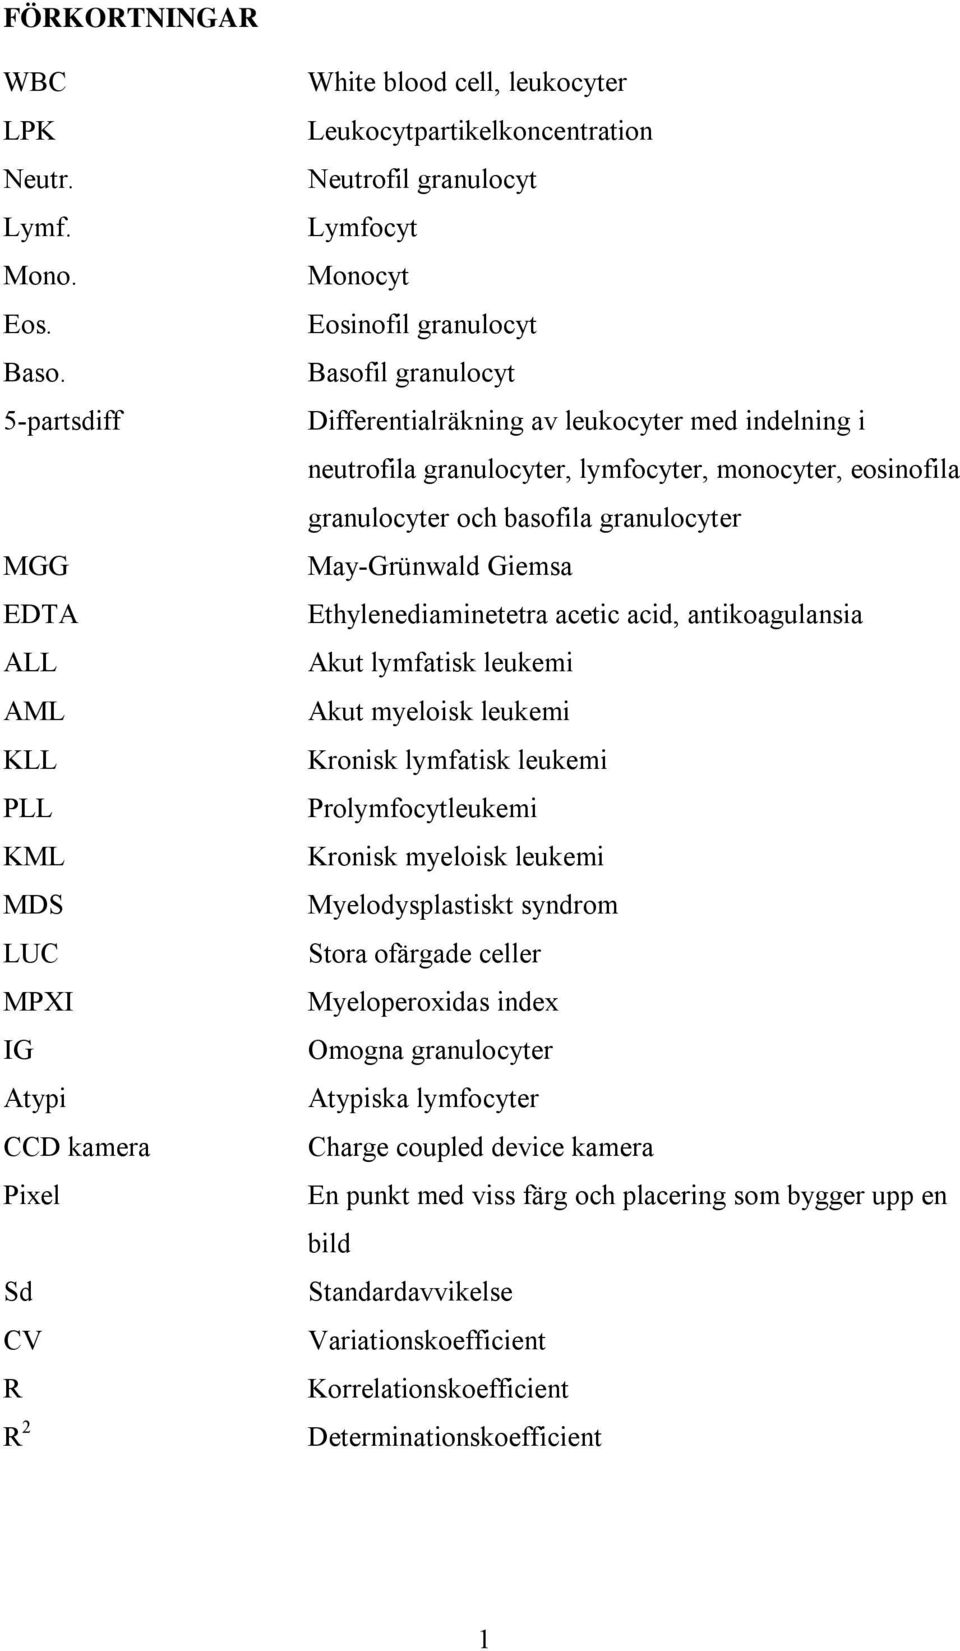 granulocyt Basofil granulocyt Differentialräkning av leukocyter med indelning i neutrofila granulocyter, lymfocyter, monocyter, eosinofila granulocyter och basofila granulocyter May-Grünwald Giemsa